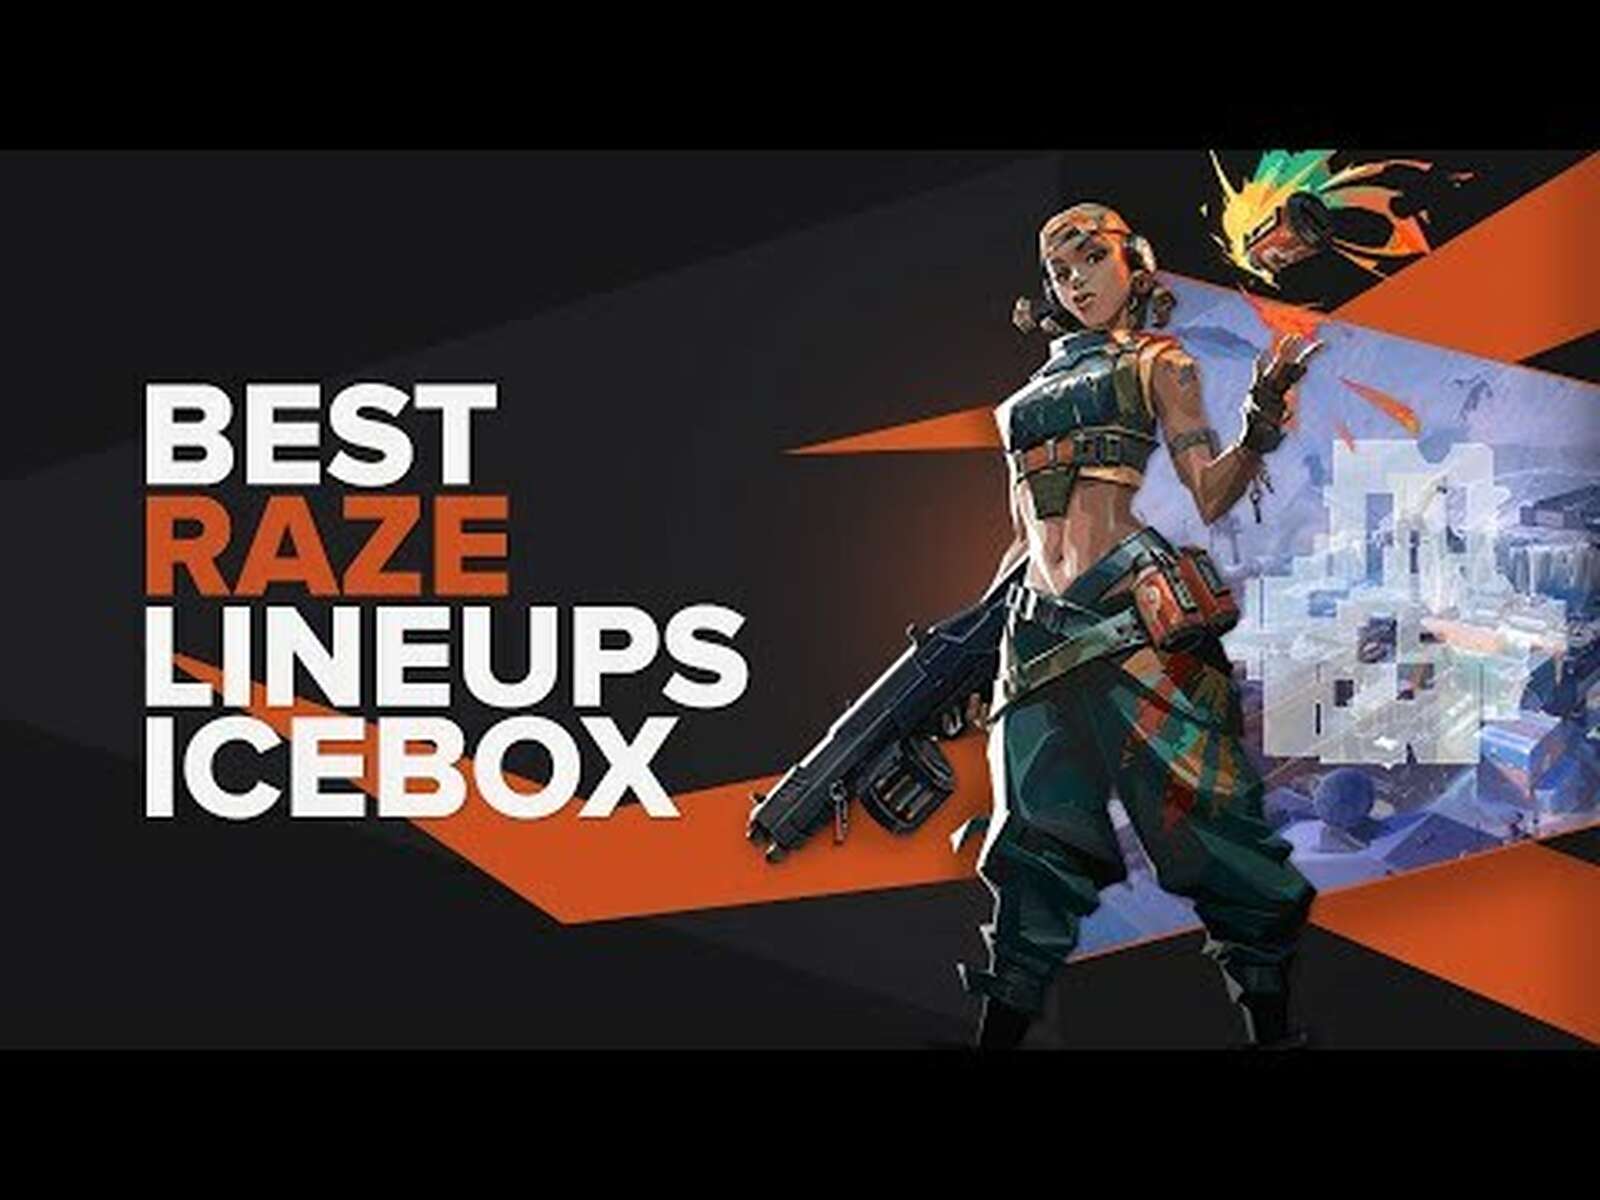 The Best Raze Lineups on Icebox